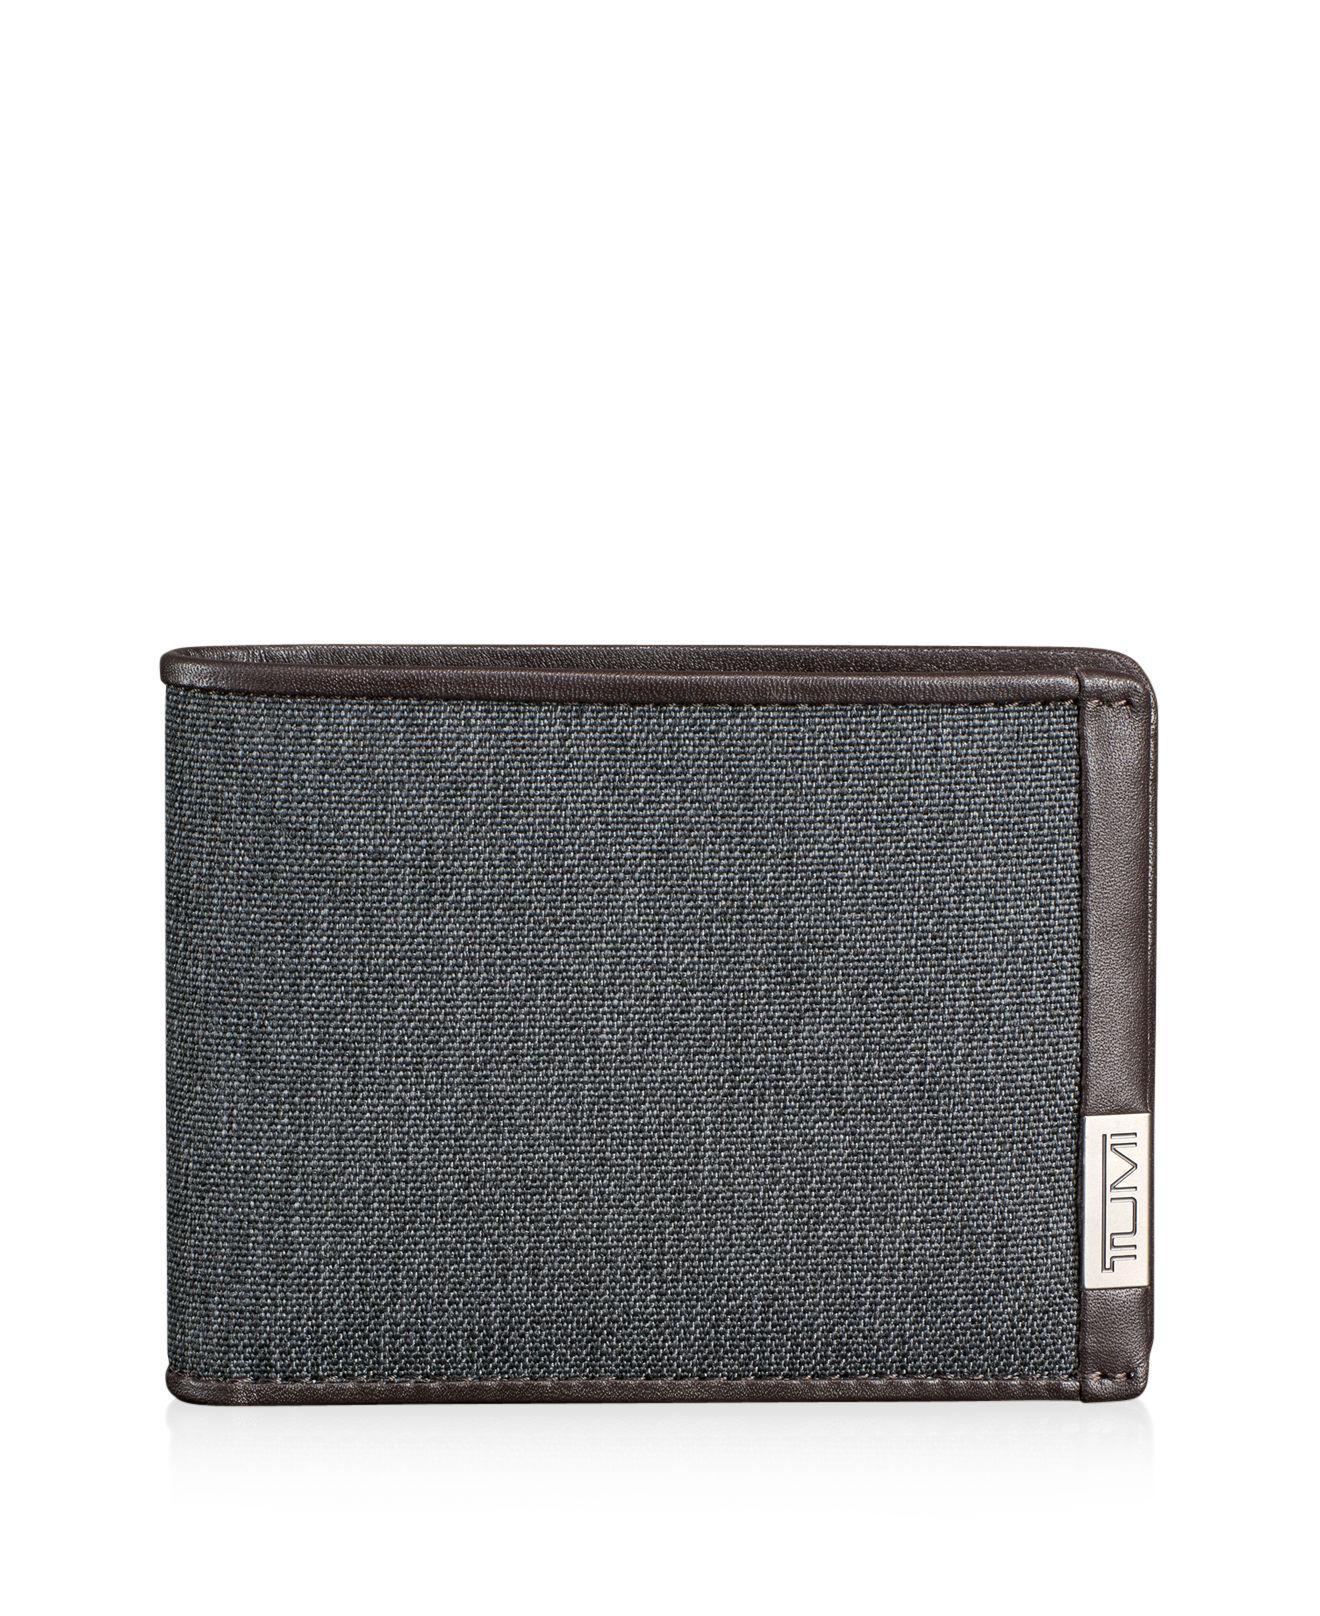 Tumi Double Billfold Bi-fold Wallet in Gray for Men - Lyst